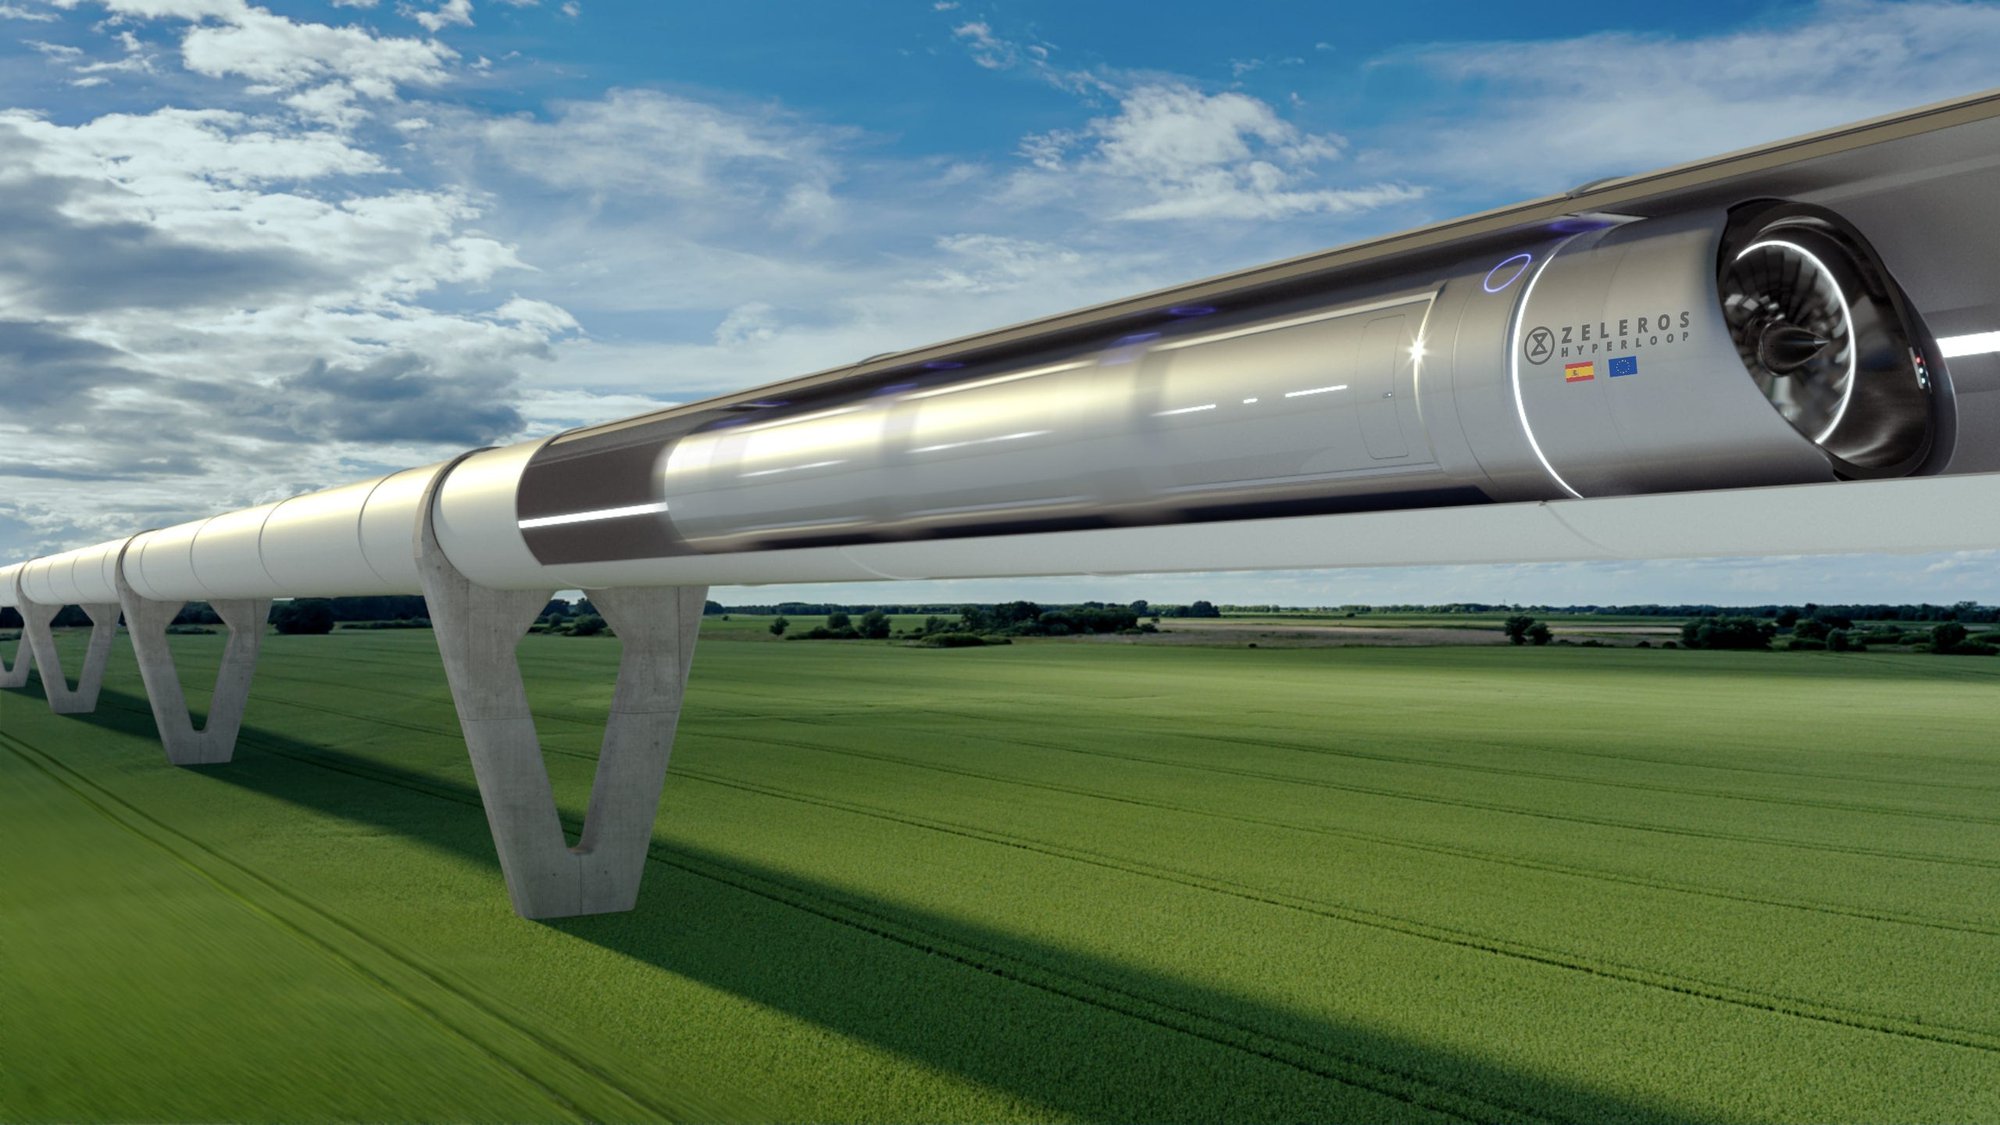 Trung Quốc lần đầu thử nghiệm thành công tàu siêu tốc Hyperloop, có thể 'bay trên mặt đất' với tốc độ 1000km/h - Ảnh 2.